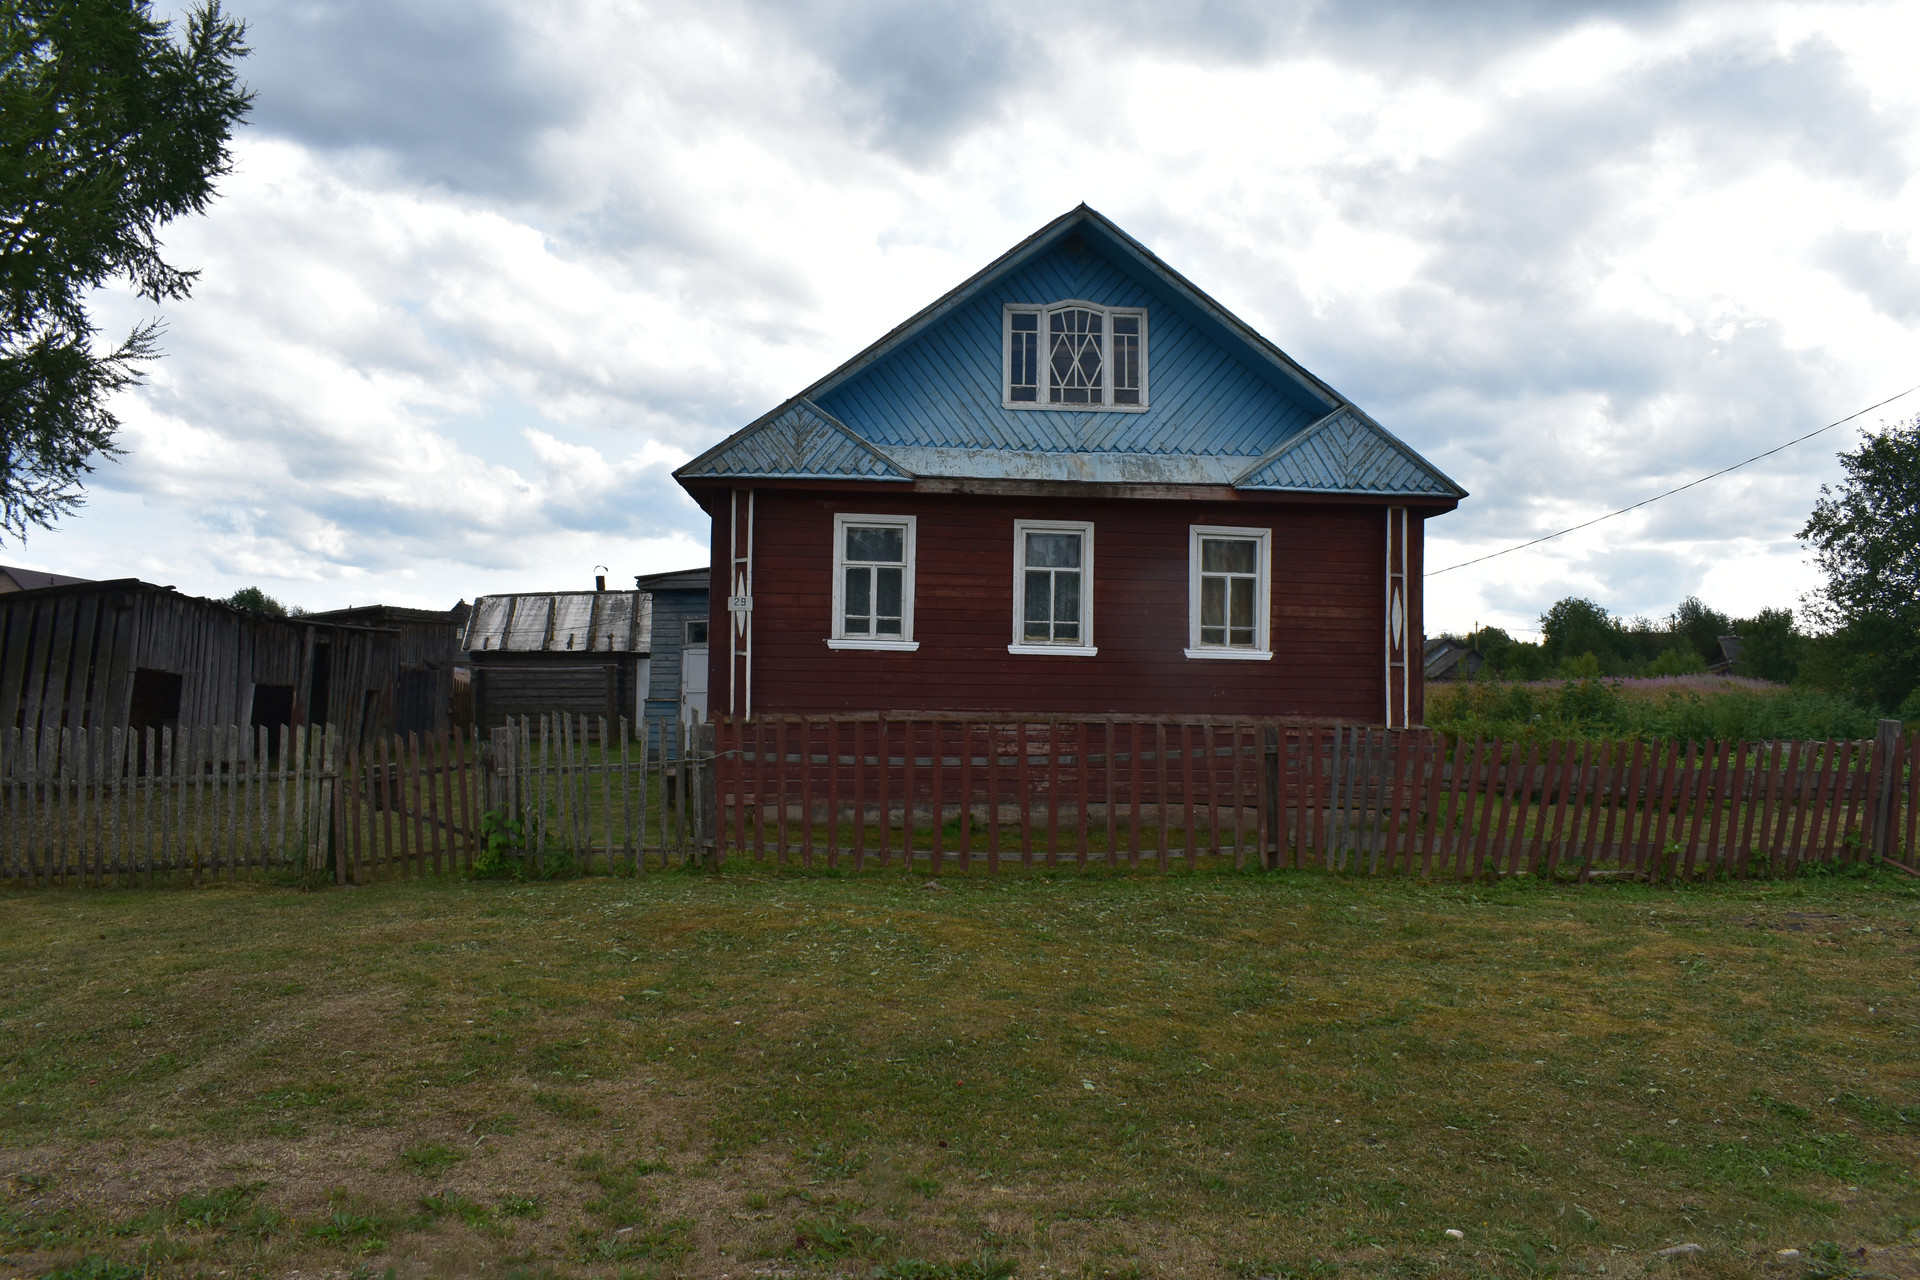 Продажа домов в белгороде и белгородском районе с фото на авито